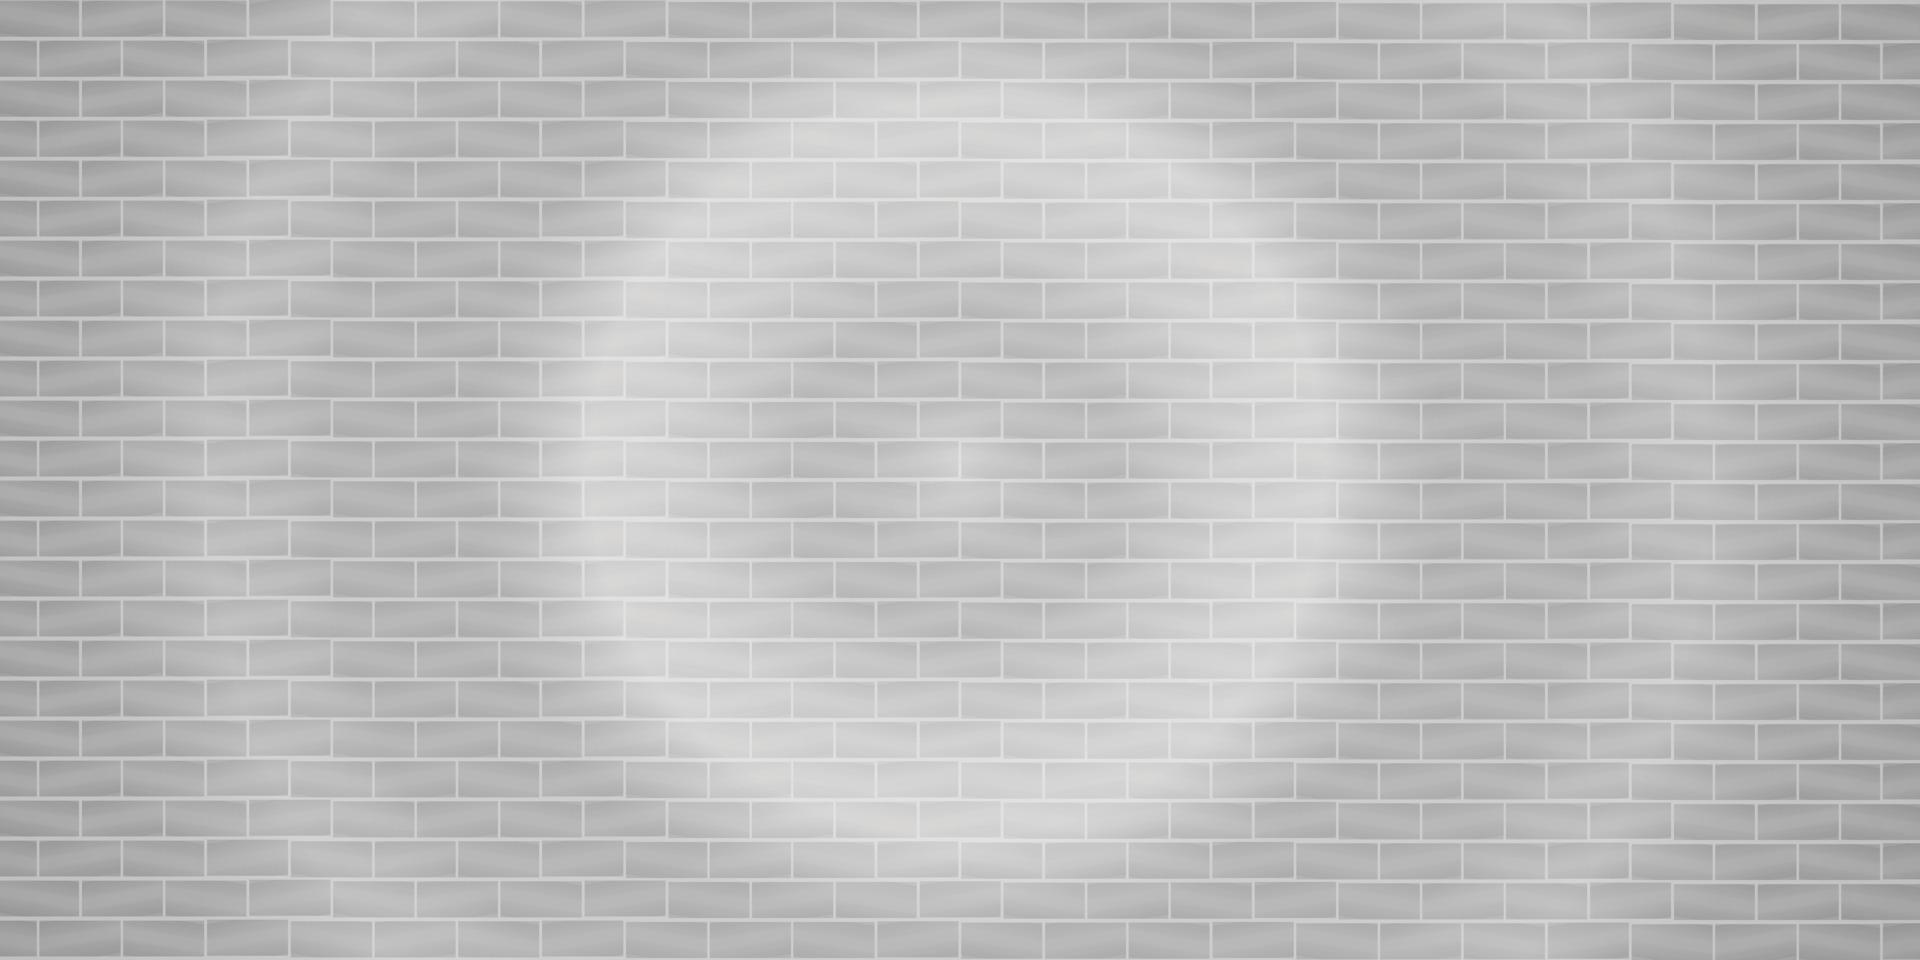 grijs licht flare bakstenen muur abstracte achtergrond textuur behang patroon naadloze vectorillustratie vector